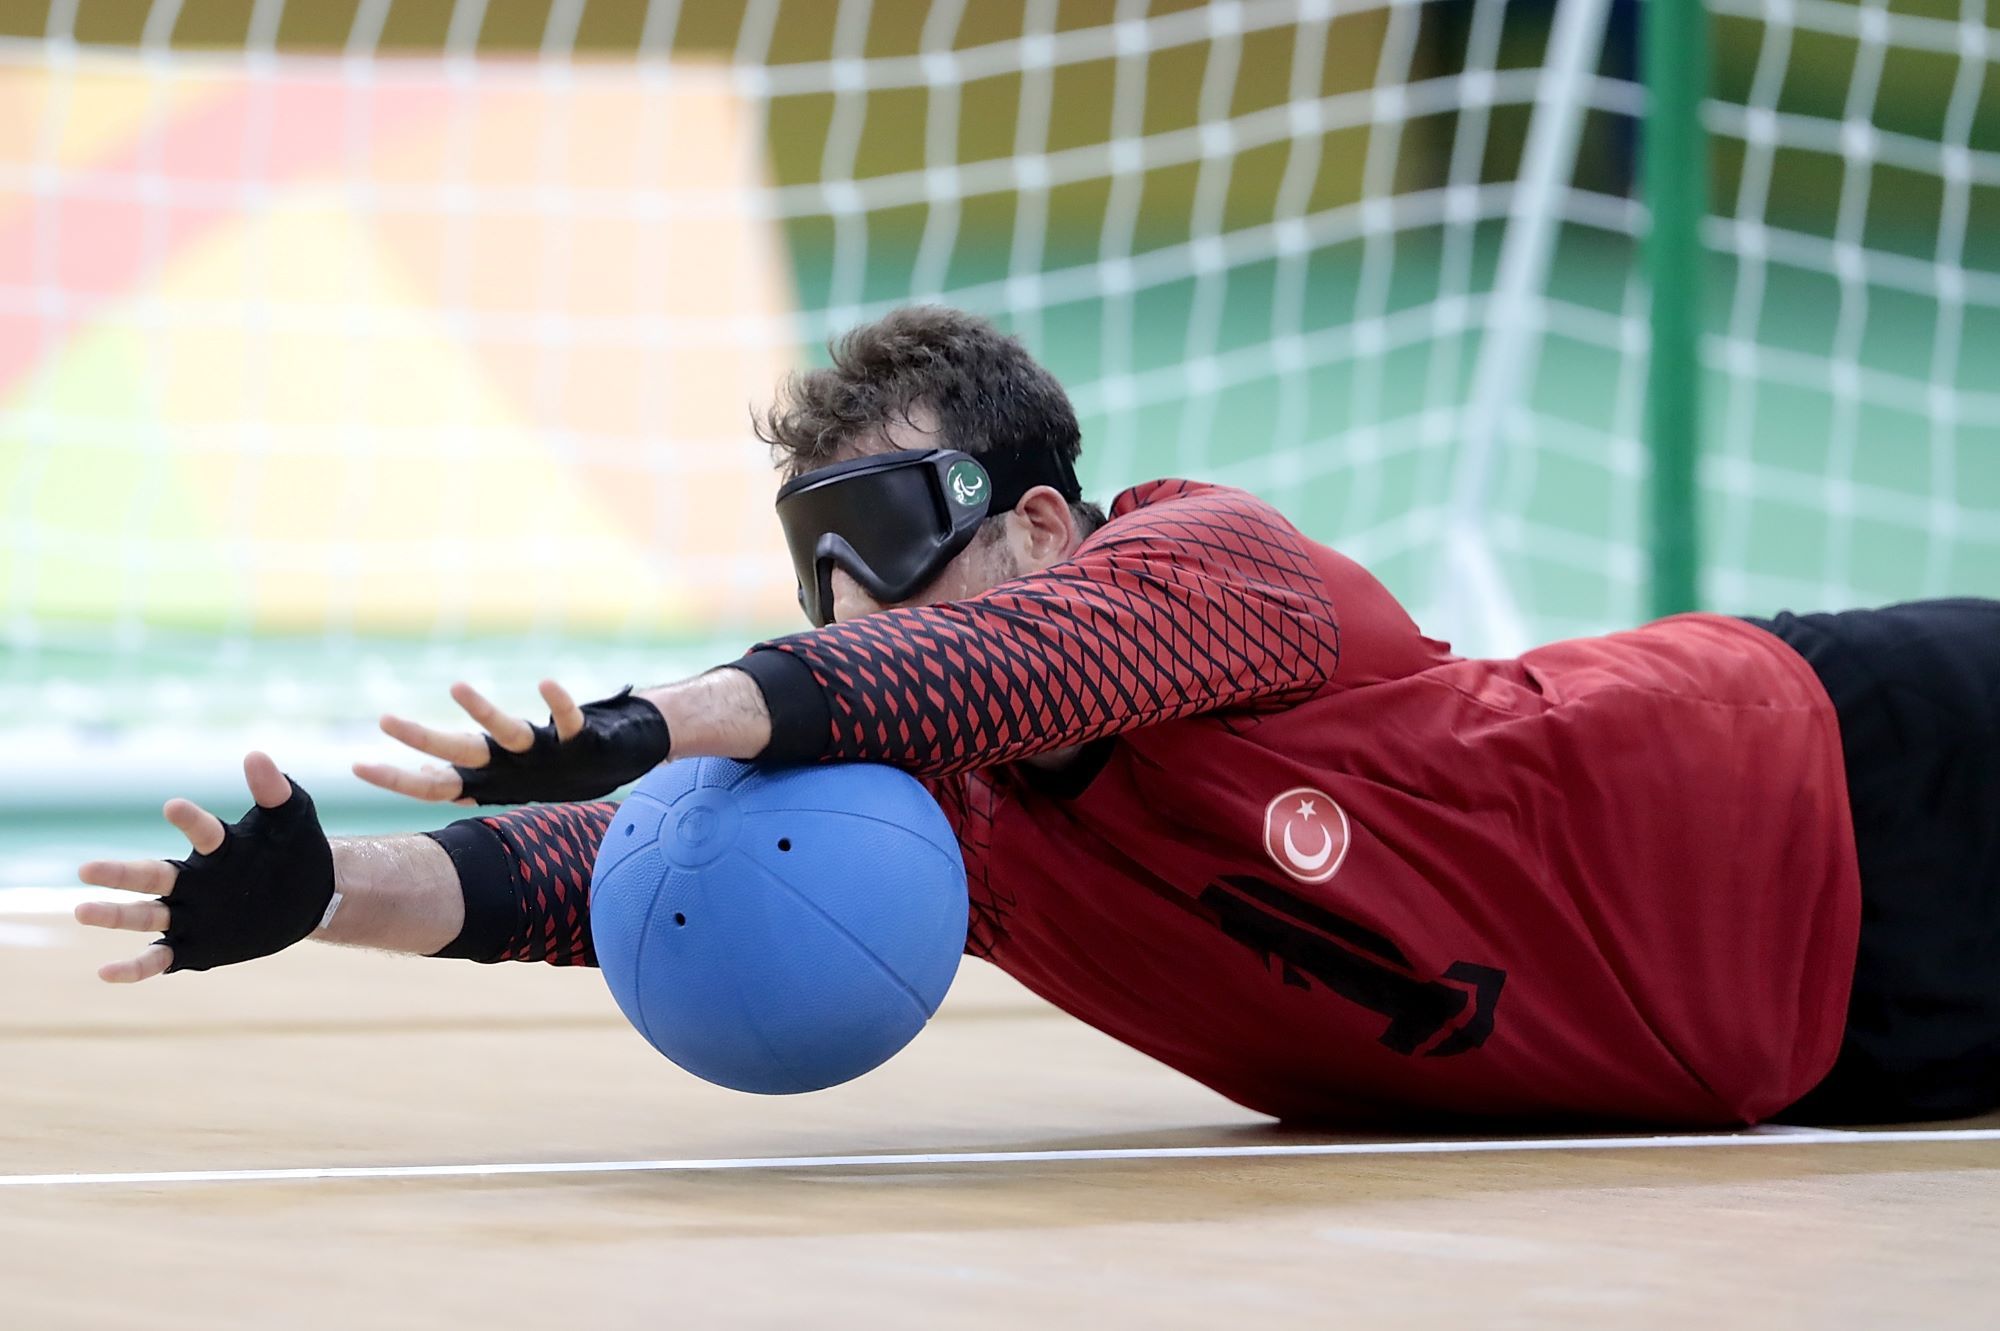 Un joueur de goalball arrête le ballon en se couchant au sol, les bras tendus